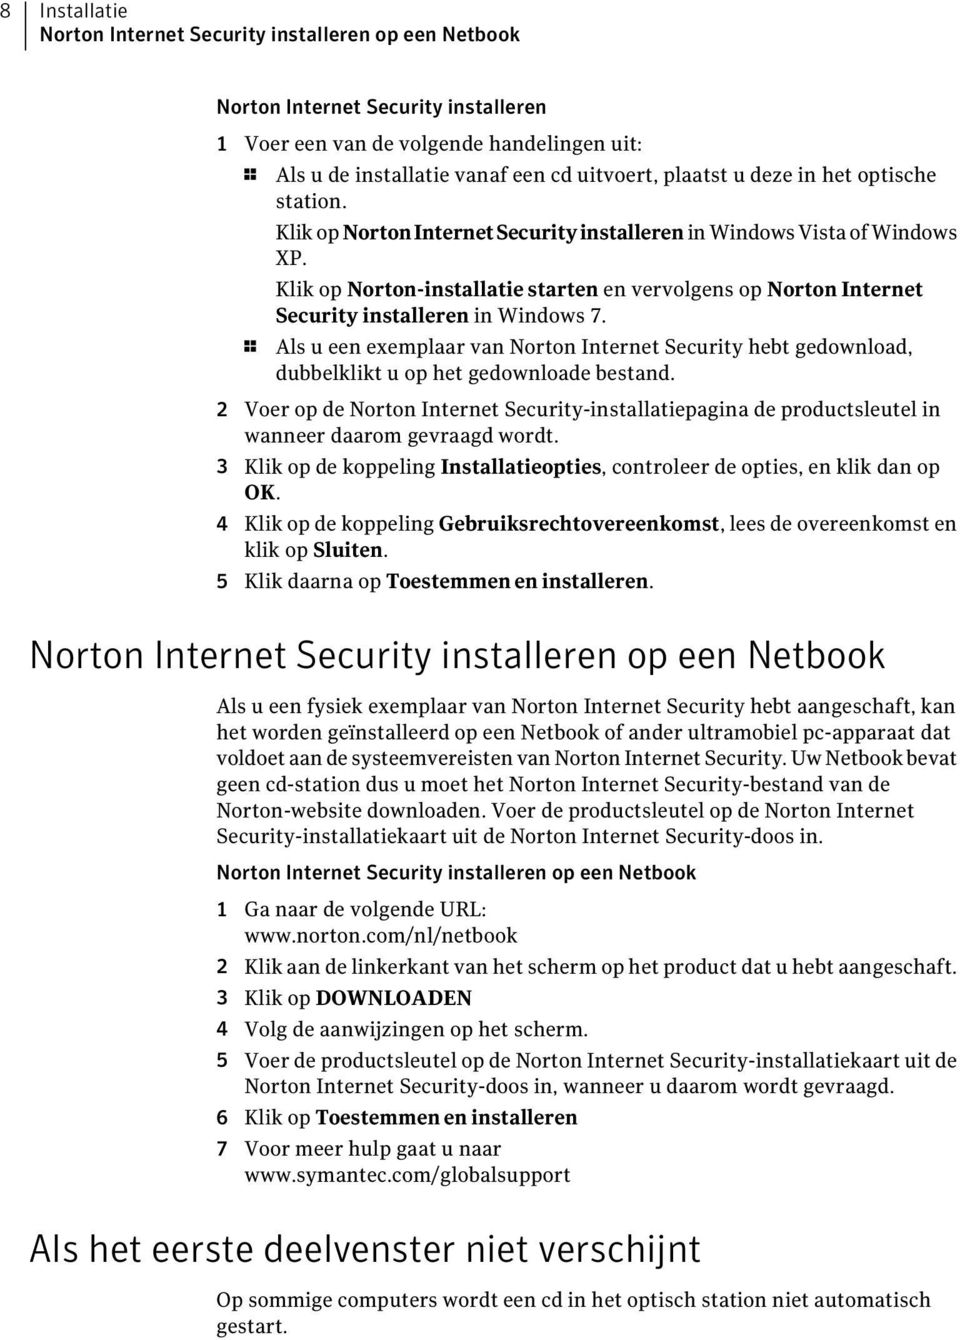 Klik op Norton-installatie starten en vervolgens op Norton Internet Security installeren in Windows 7.